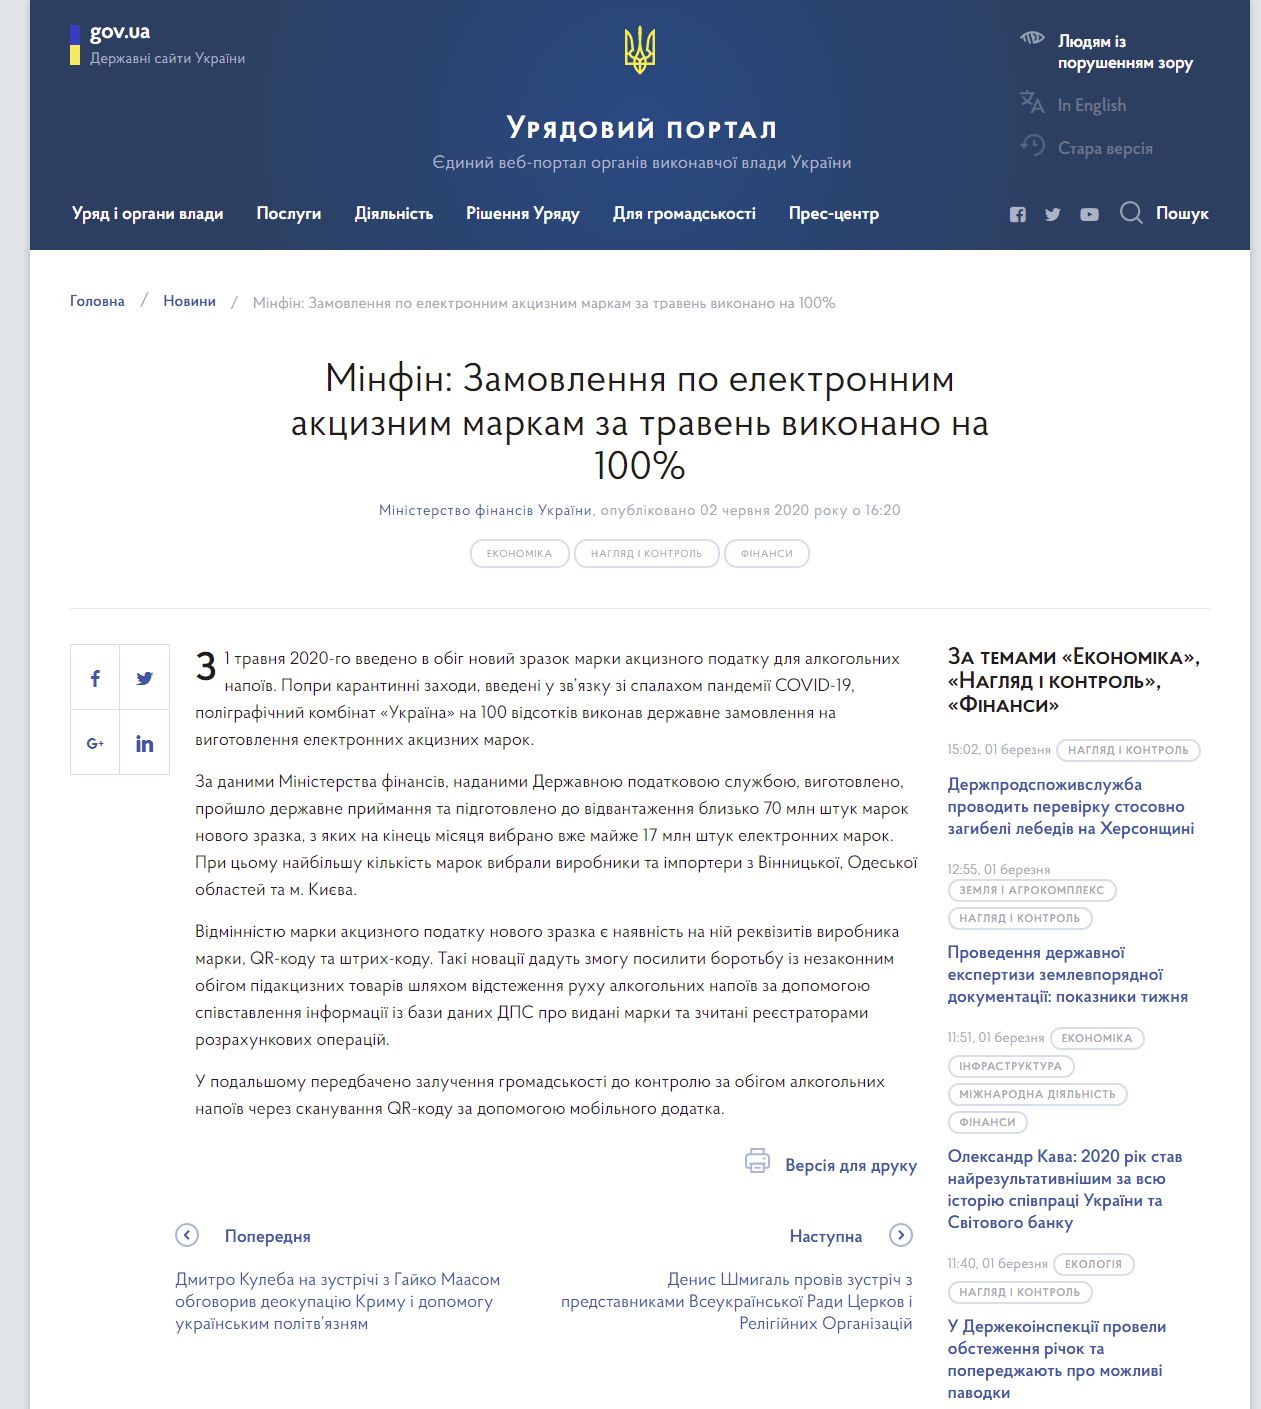 https://www.kmu.gov.ua/news/minfin-zamovlennya-po-elektronnim-akciznim-markam-za-traven-vikonano-na-100